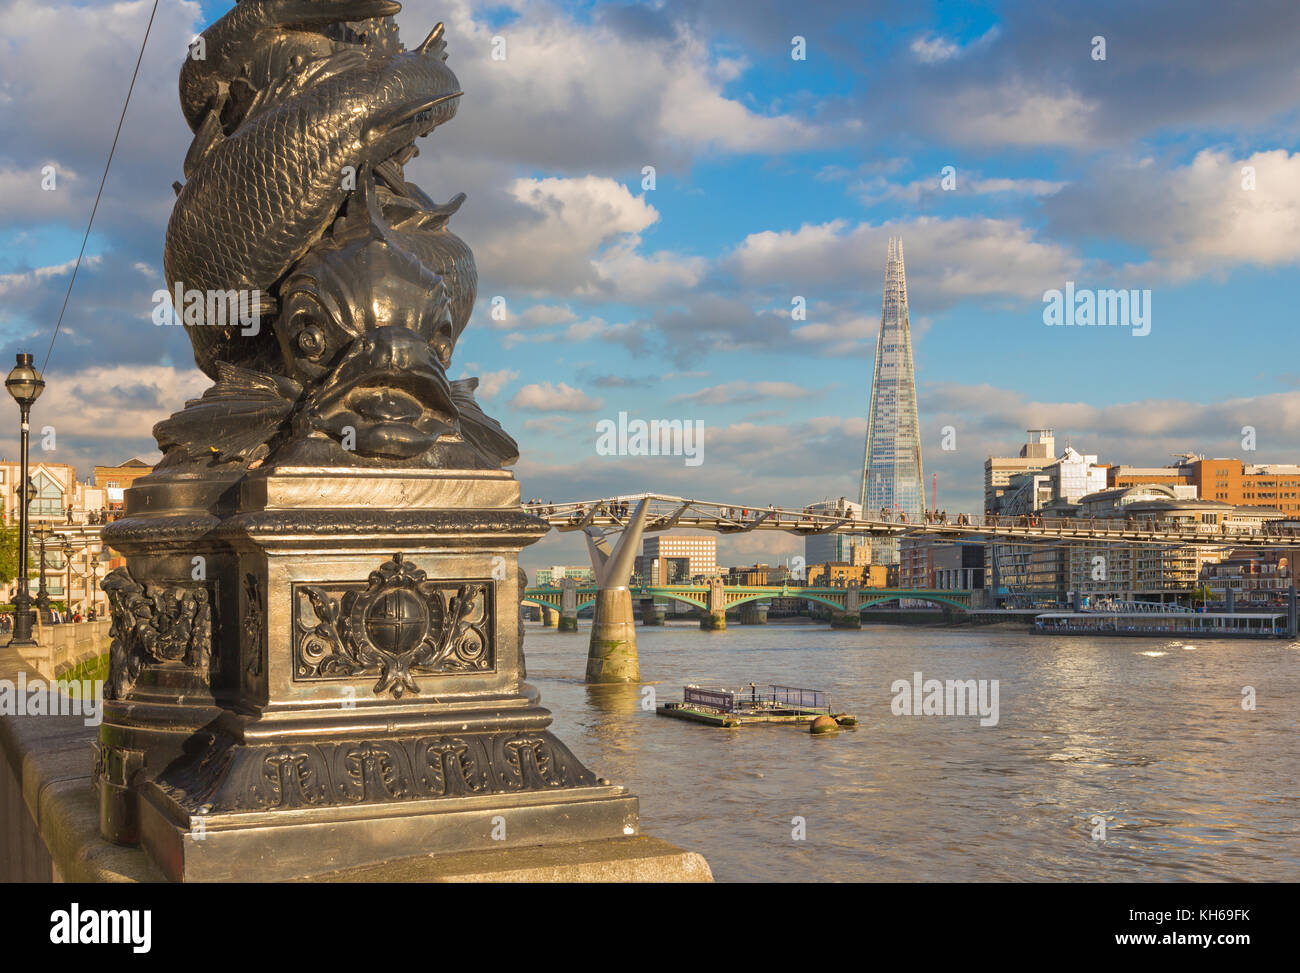 Londres - el candelabro de thames promenade, el puente Millennium y shard en luz del atardecer. Foto de stock